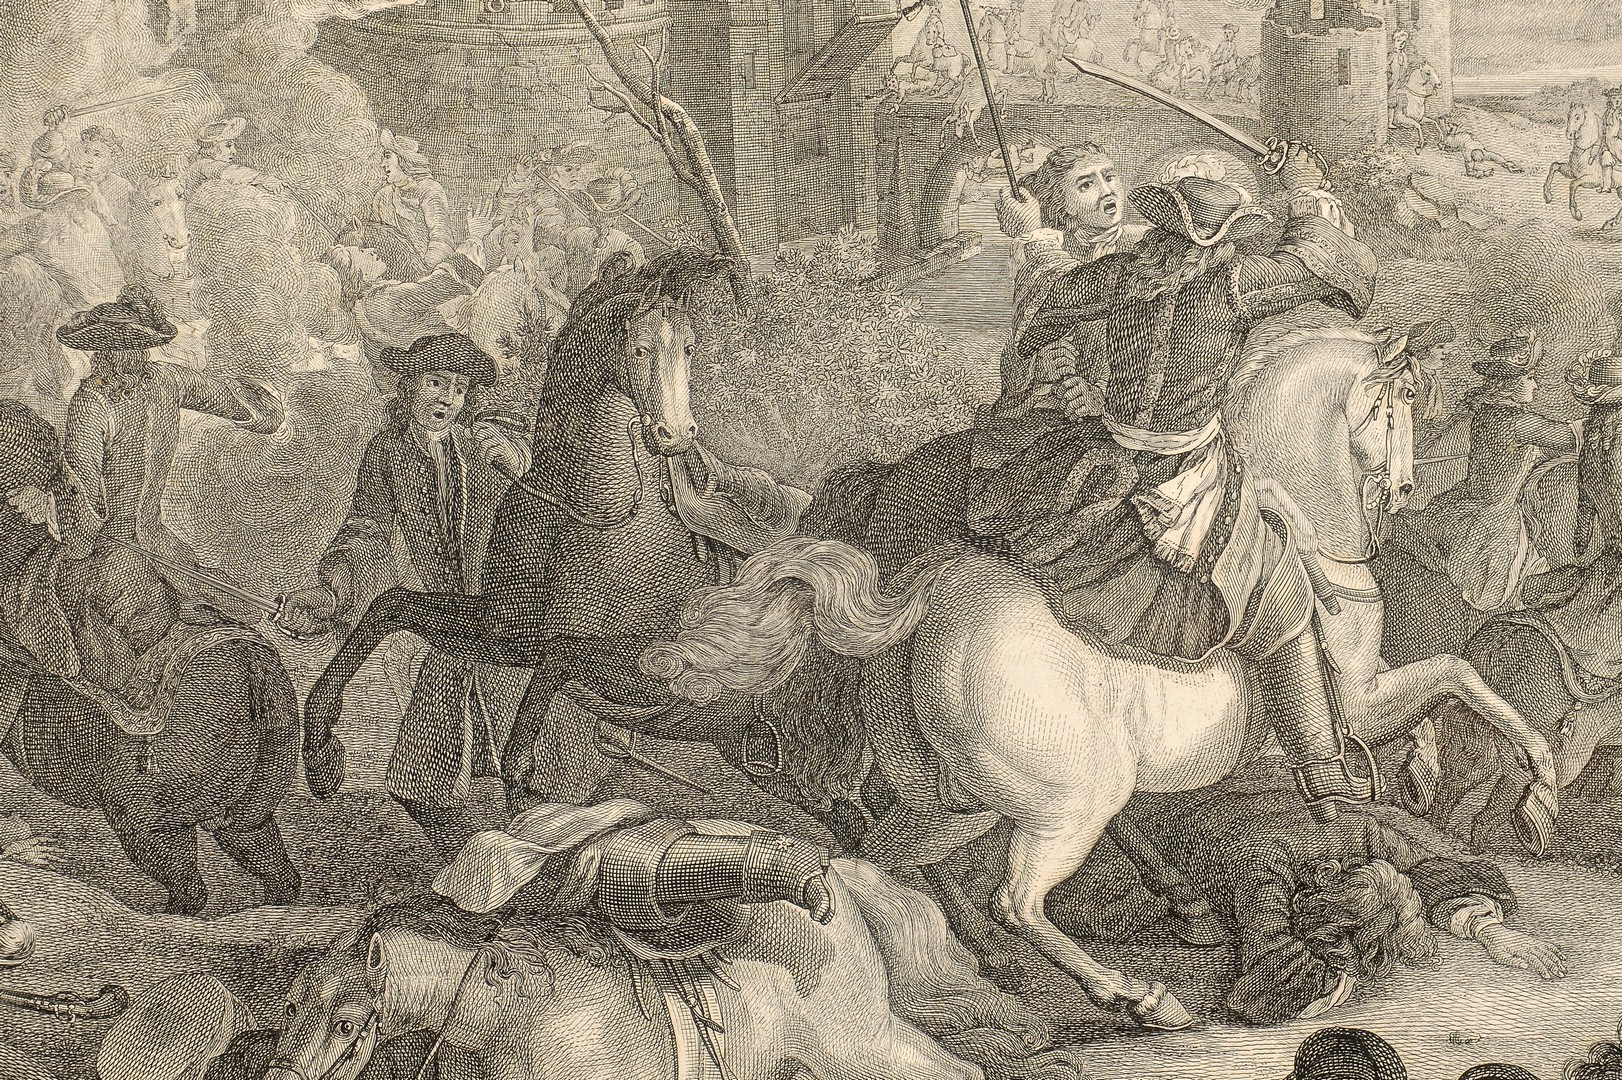 Lot 236: French Battle Scene Engraving, Prise de Thionville